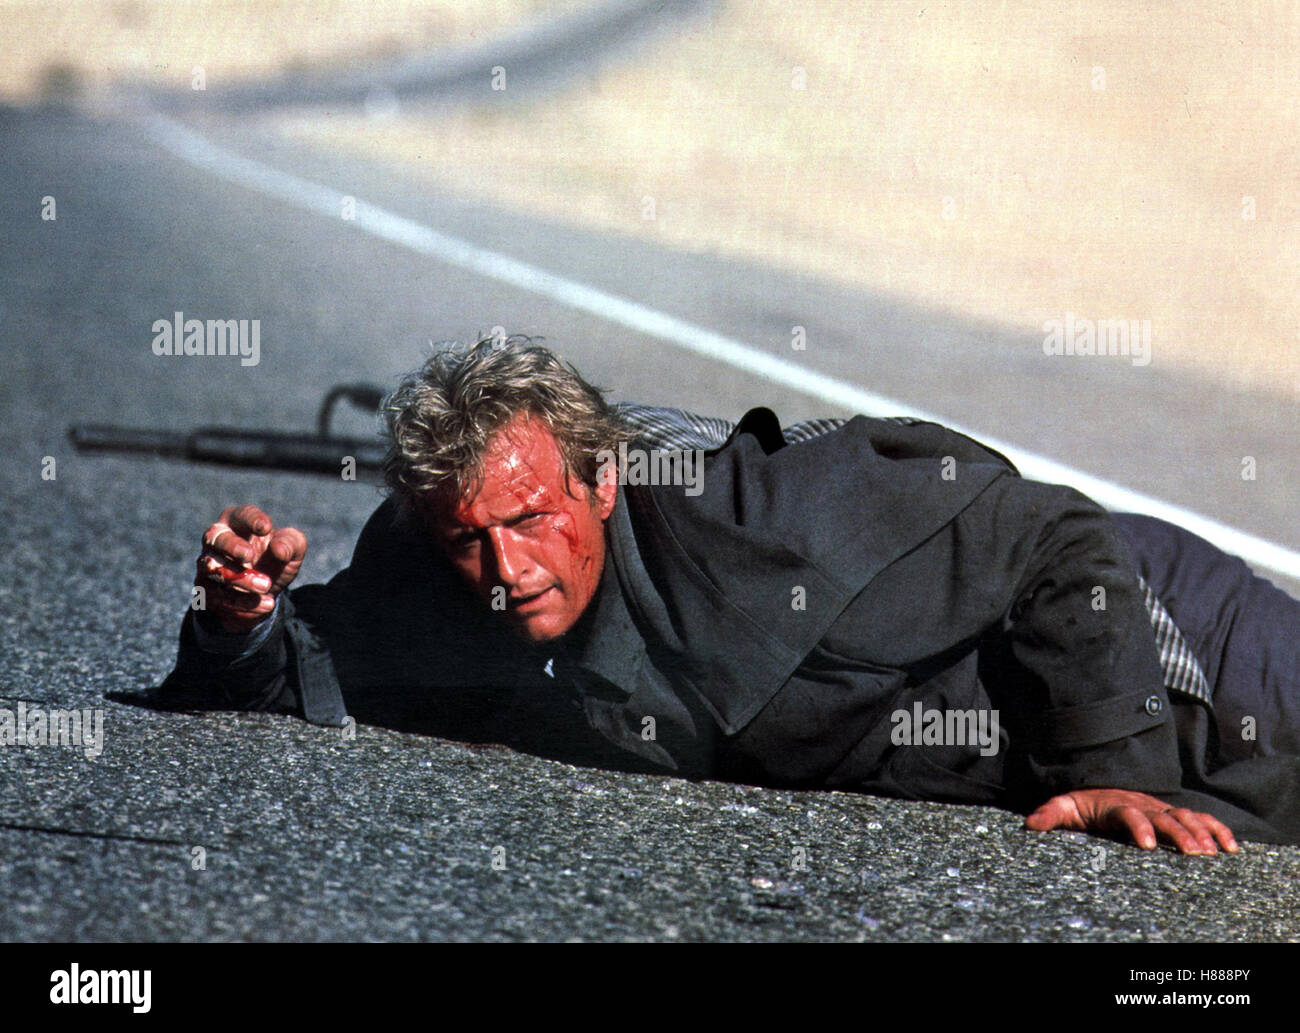 Hitcher - Der Highwaykiller, (THE HITCHER) USA 1985, Regie: Robert Harmon, RUTGER HAUER, Stichwort: Verletzter, Straße, Wunde Stock Photo